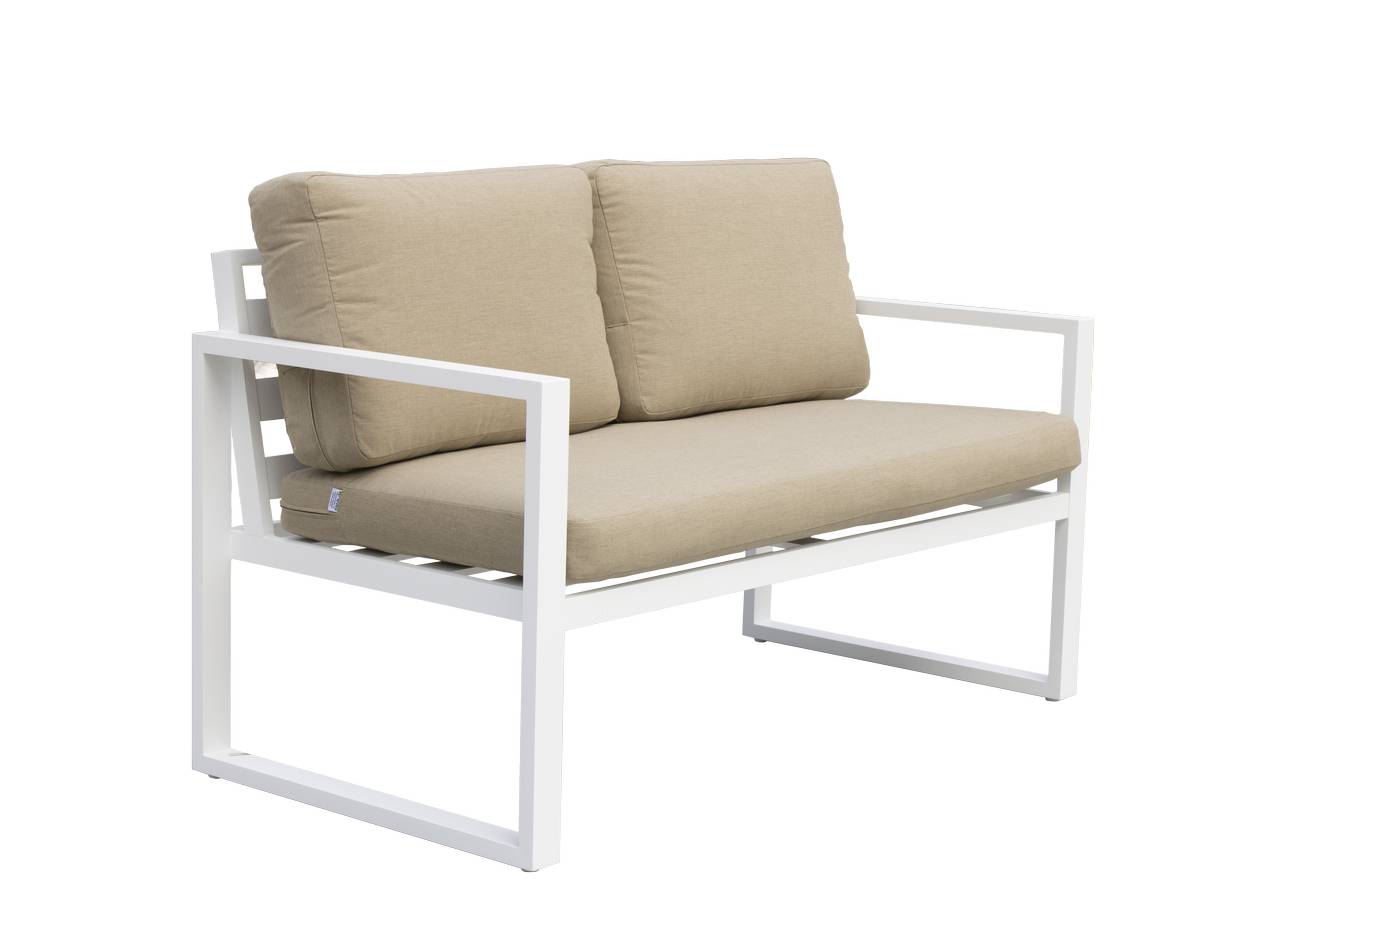 Set Aluminio Fenix-7 - Conjunto aluminio: 1 sofá 2 plazas + 2 sillones + 1 mesa de centro. Disponible en cinco colores diferentes.